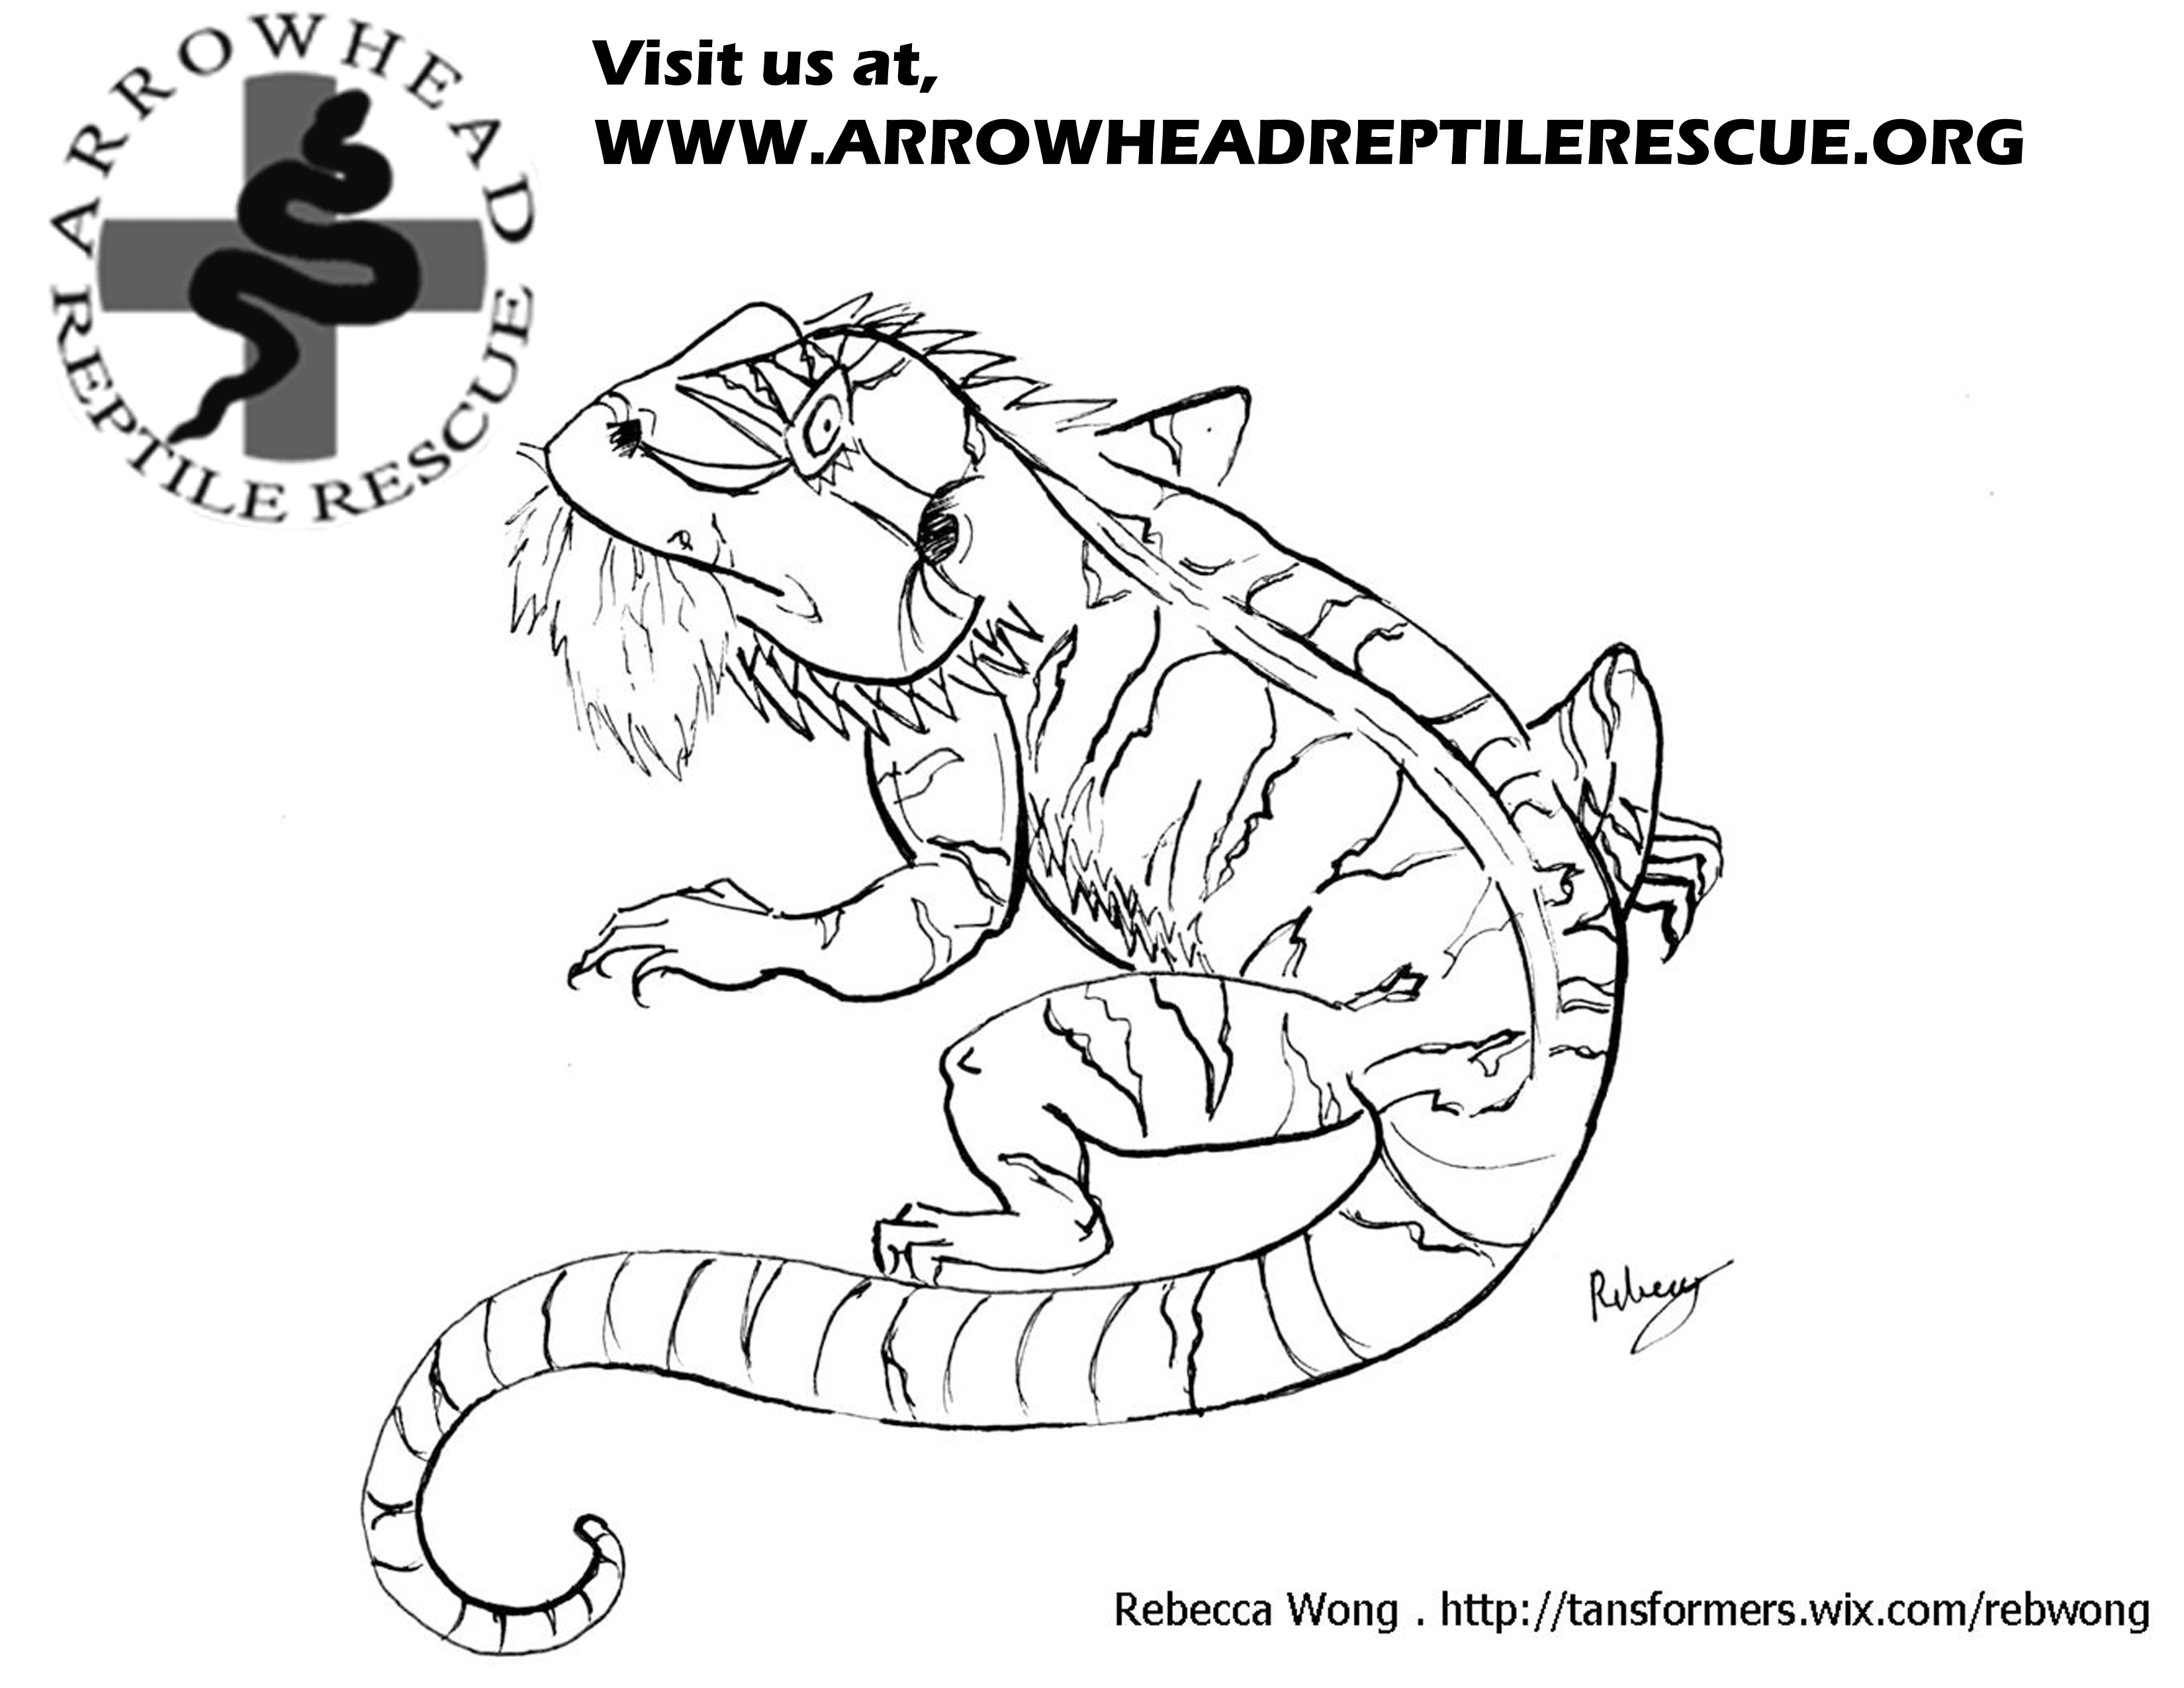 Arrowhead Reptile Rescue